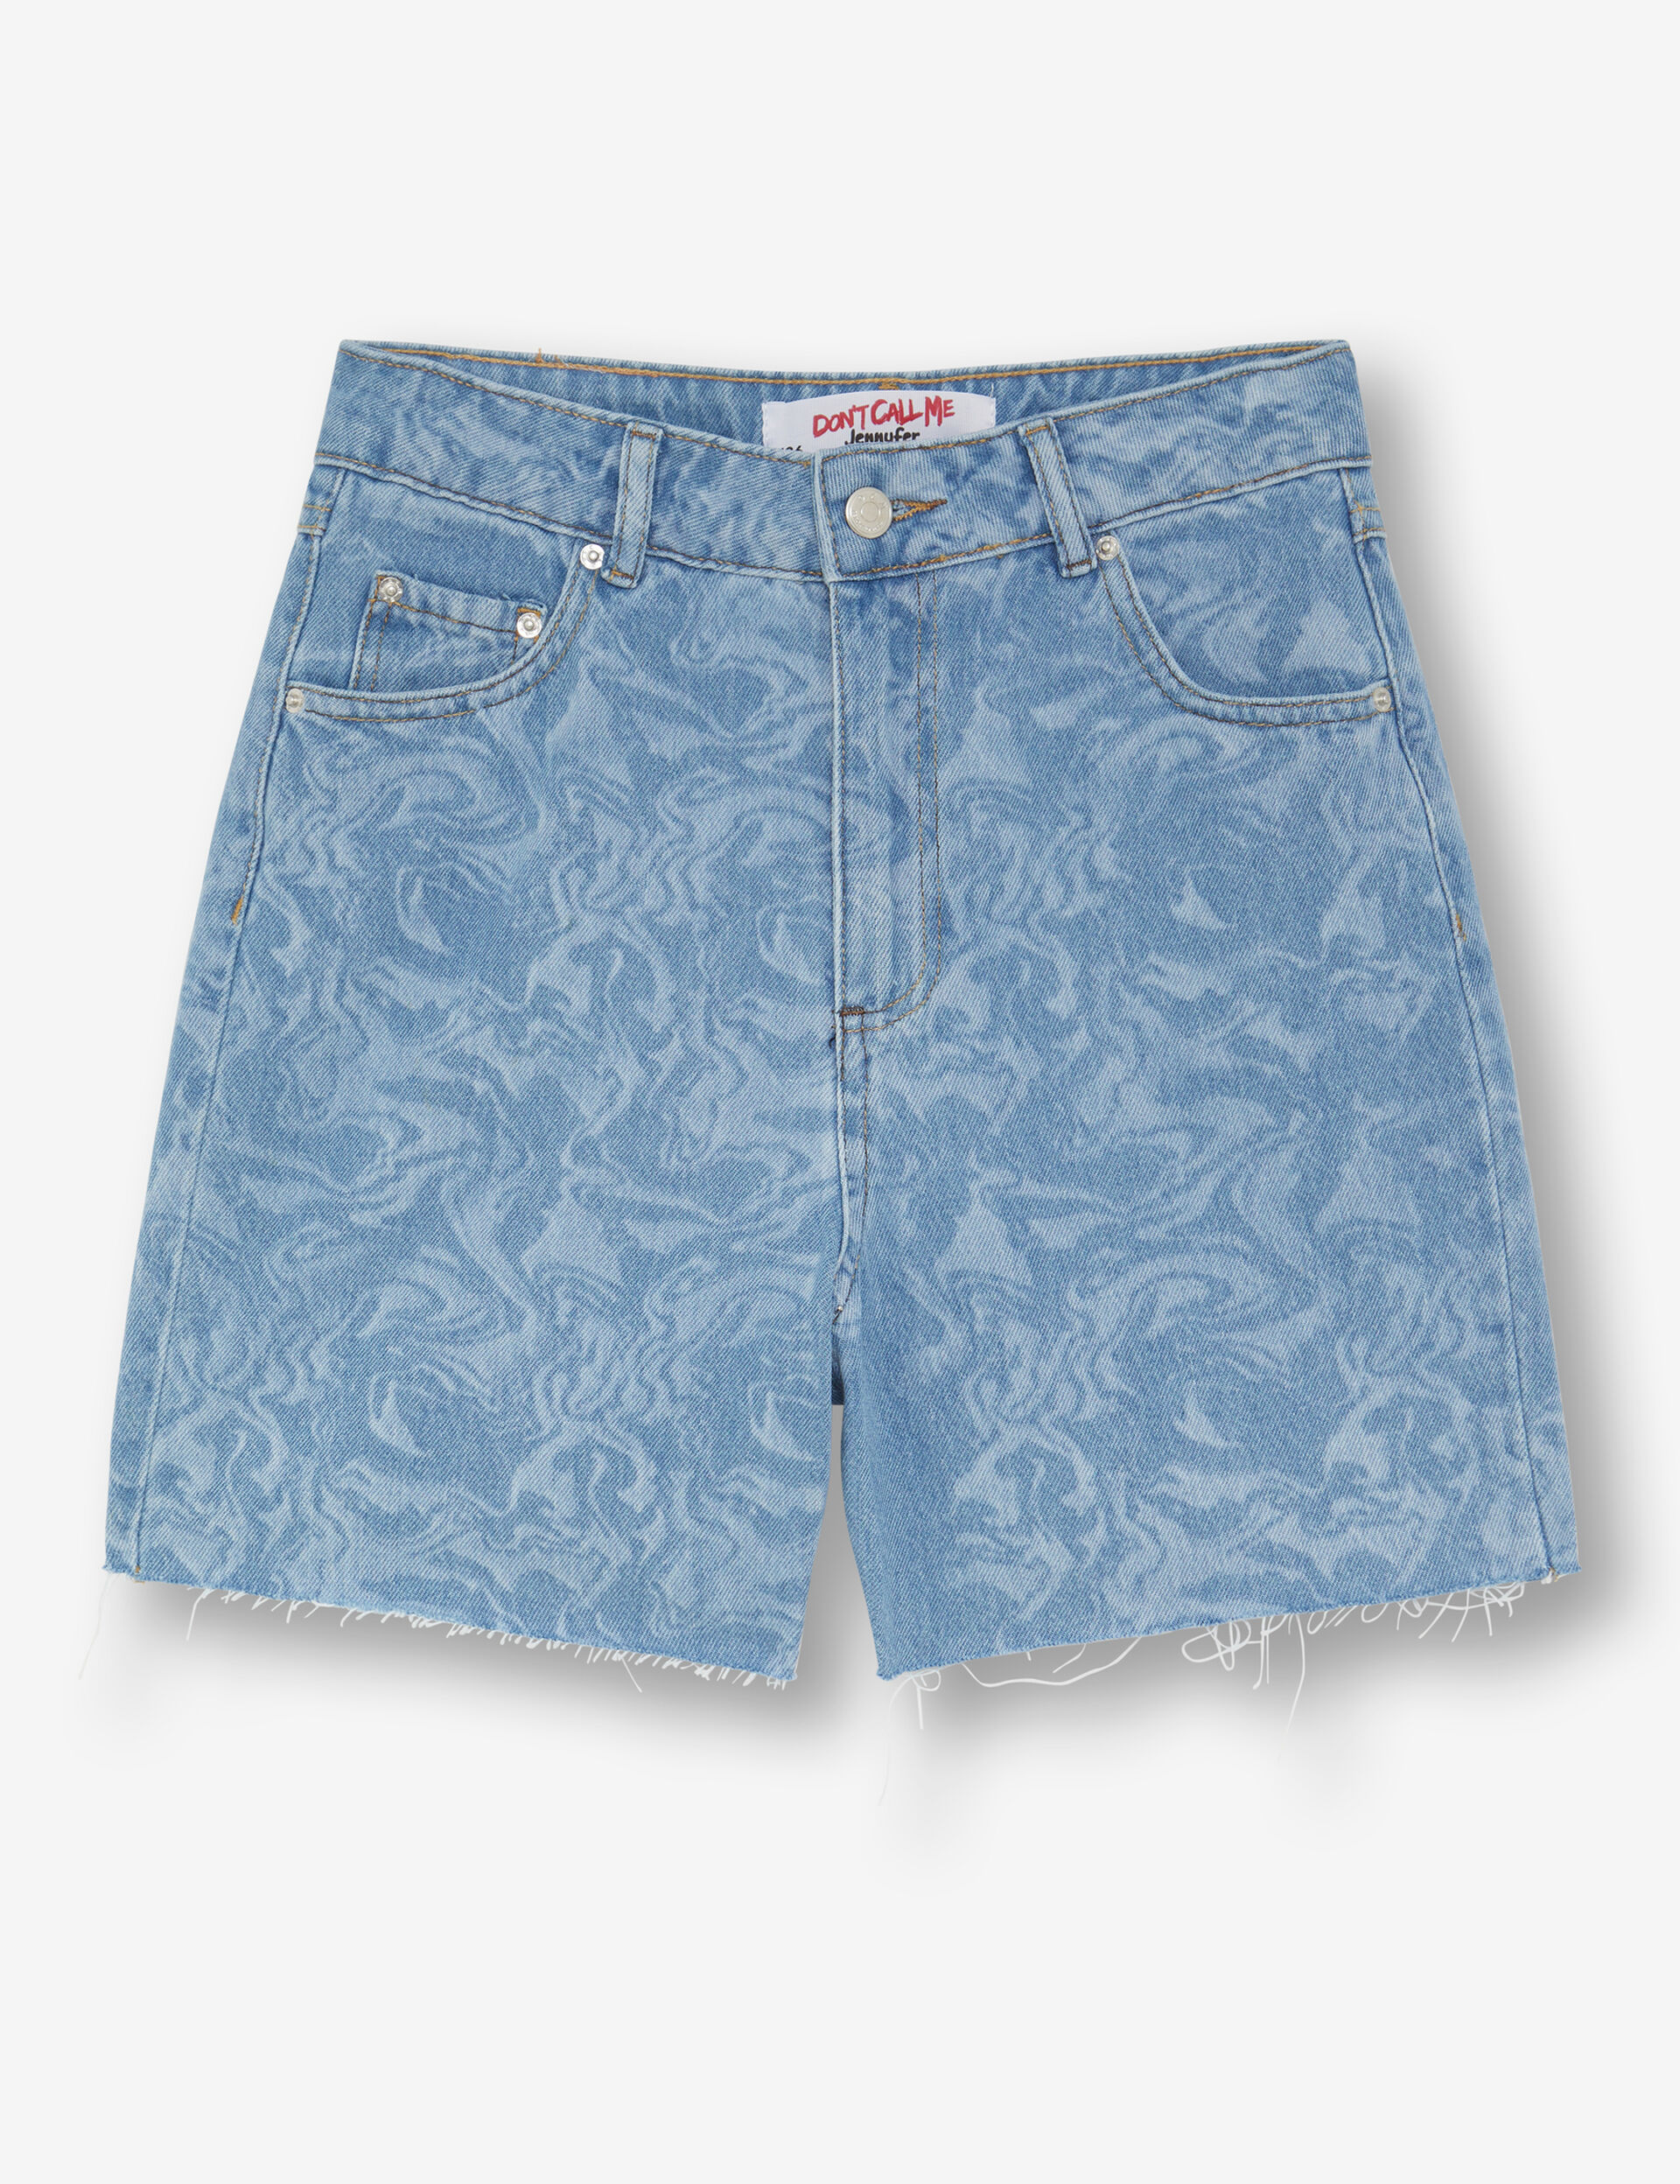 Printed denim Bermuda shorts